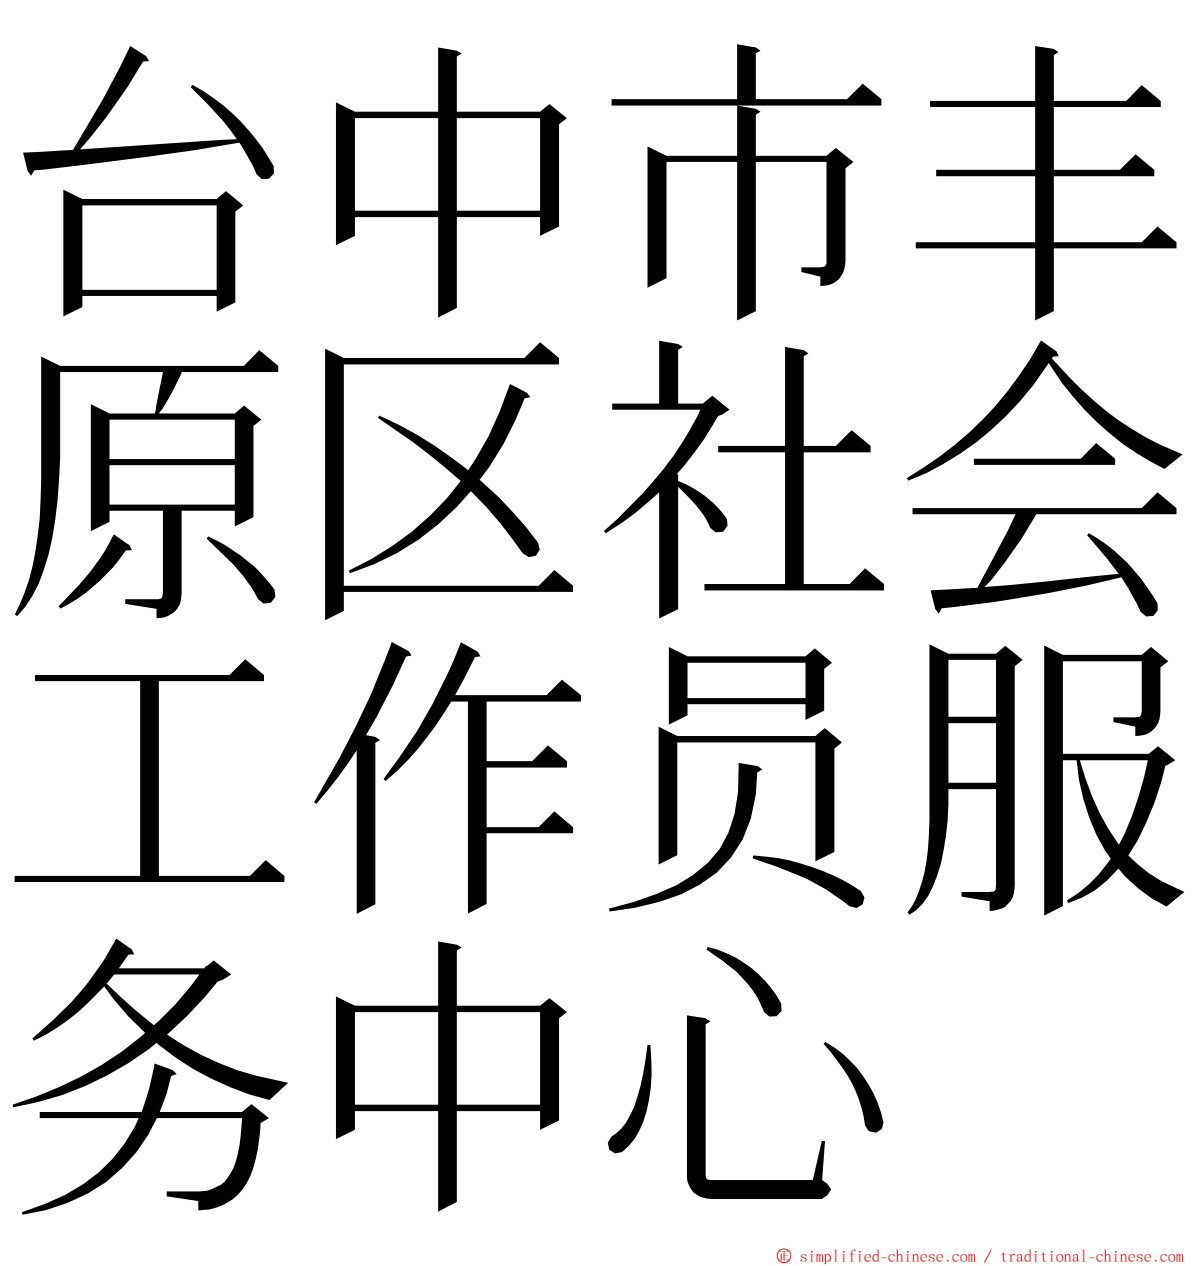 台中市丰原区社会工作员服务中心 ming font